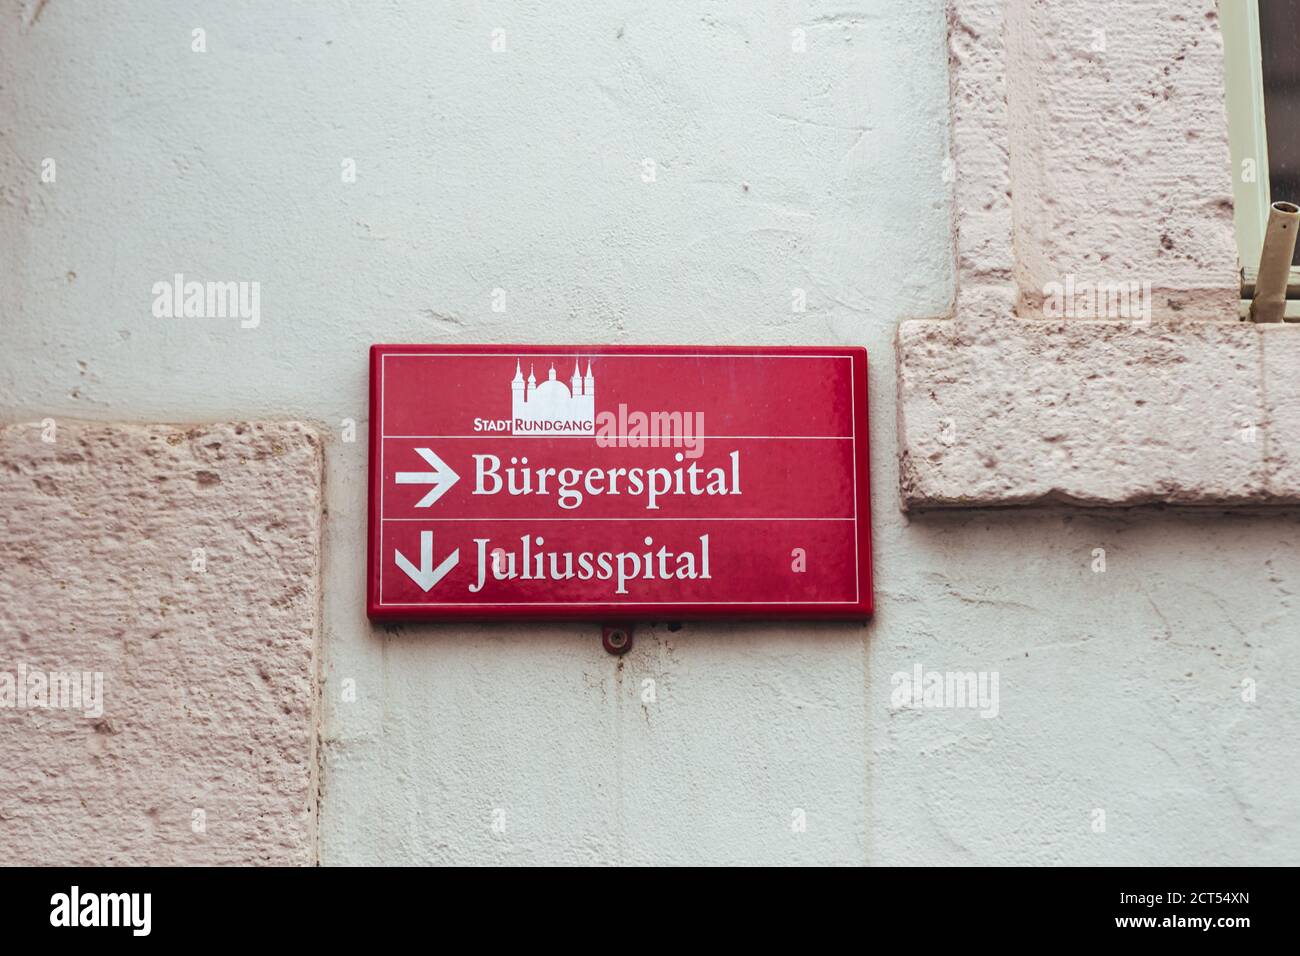 Panneau de visite de la ville directionnel rouge pour les touristes dans une rue à Wurzburg, Allemagne. Burgerspital (FR. Burger Hospital), Juliusspital (eng. Hôpital Julius) Banque D'Images